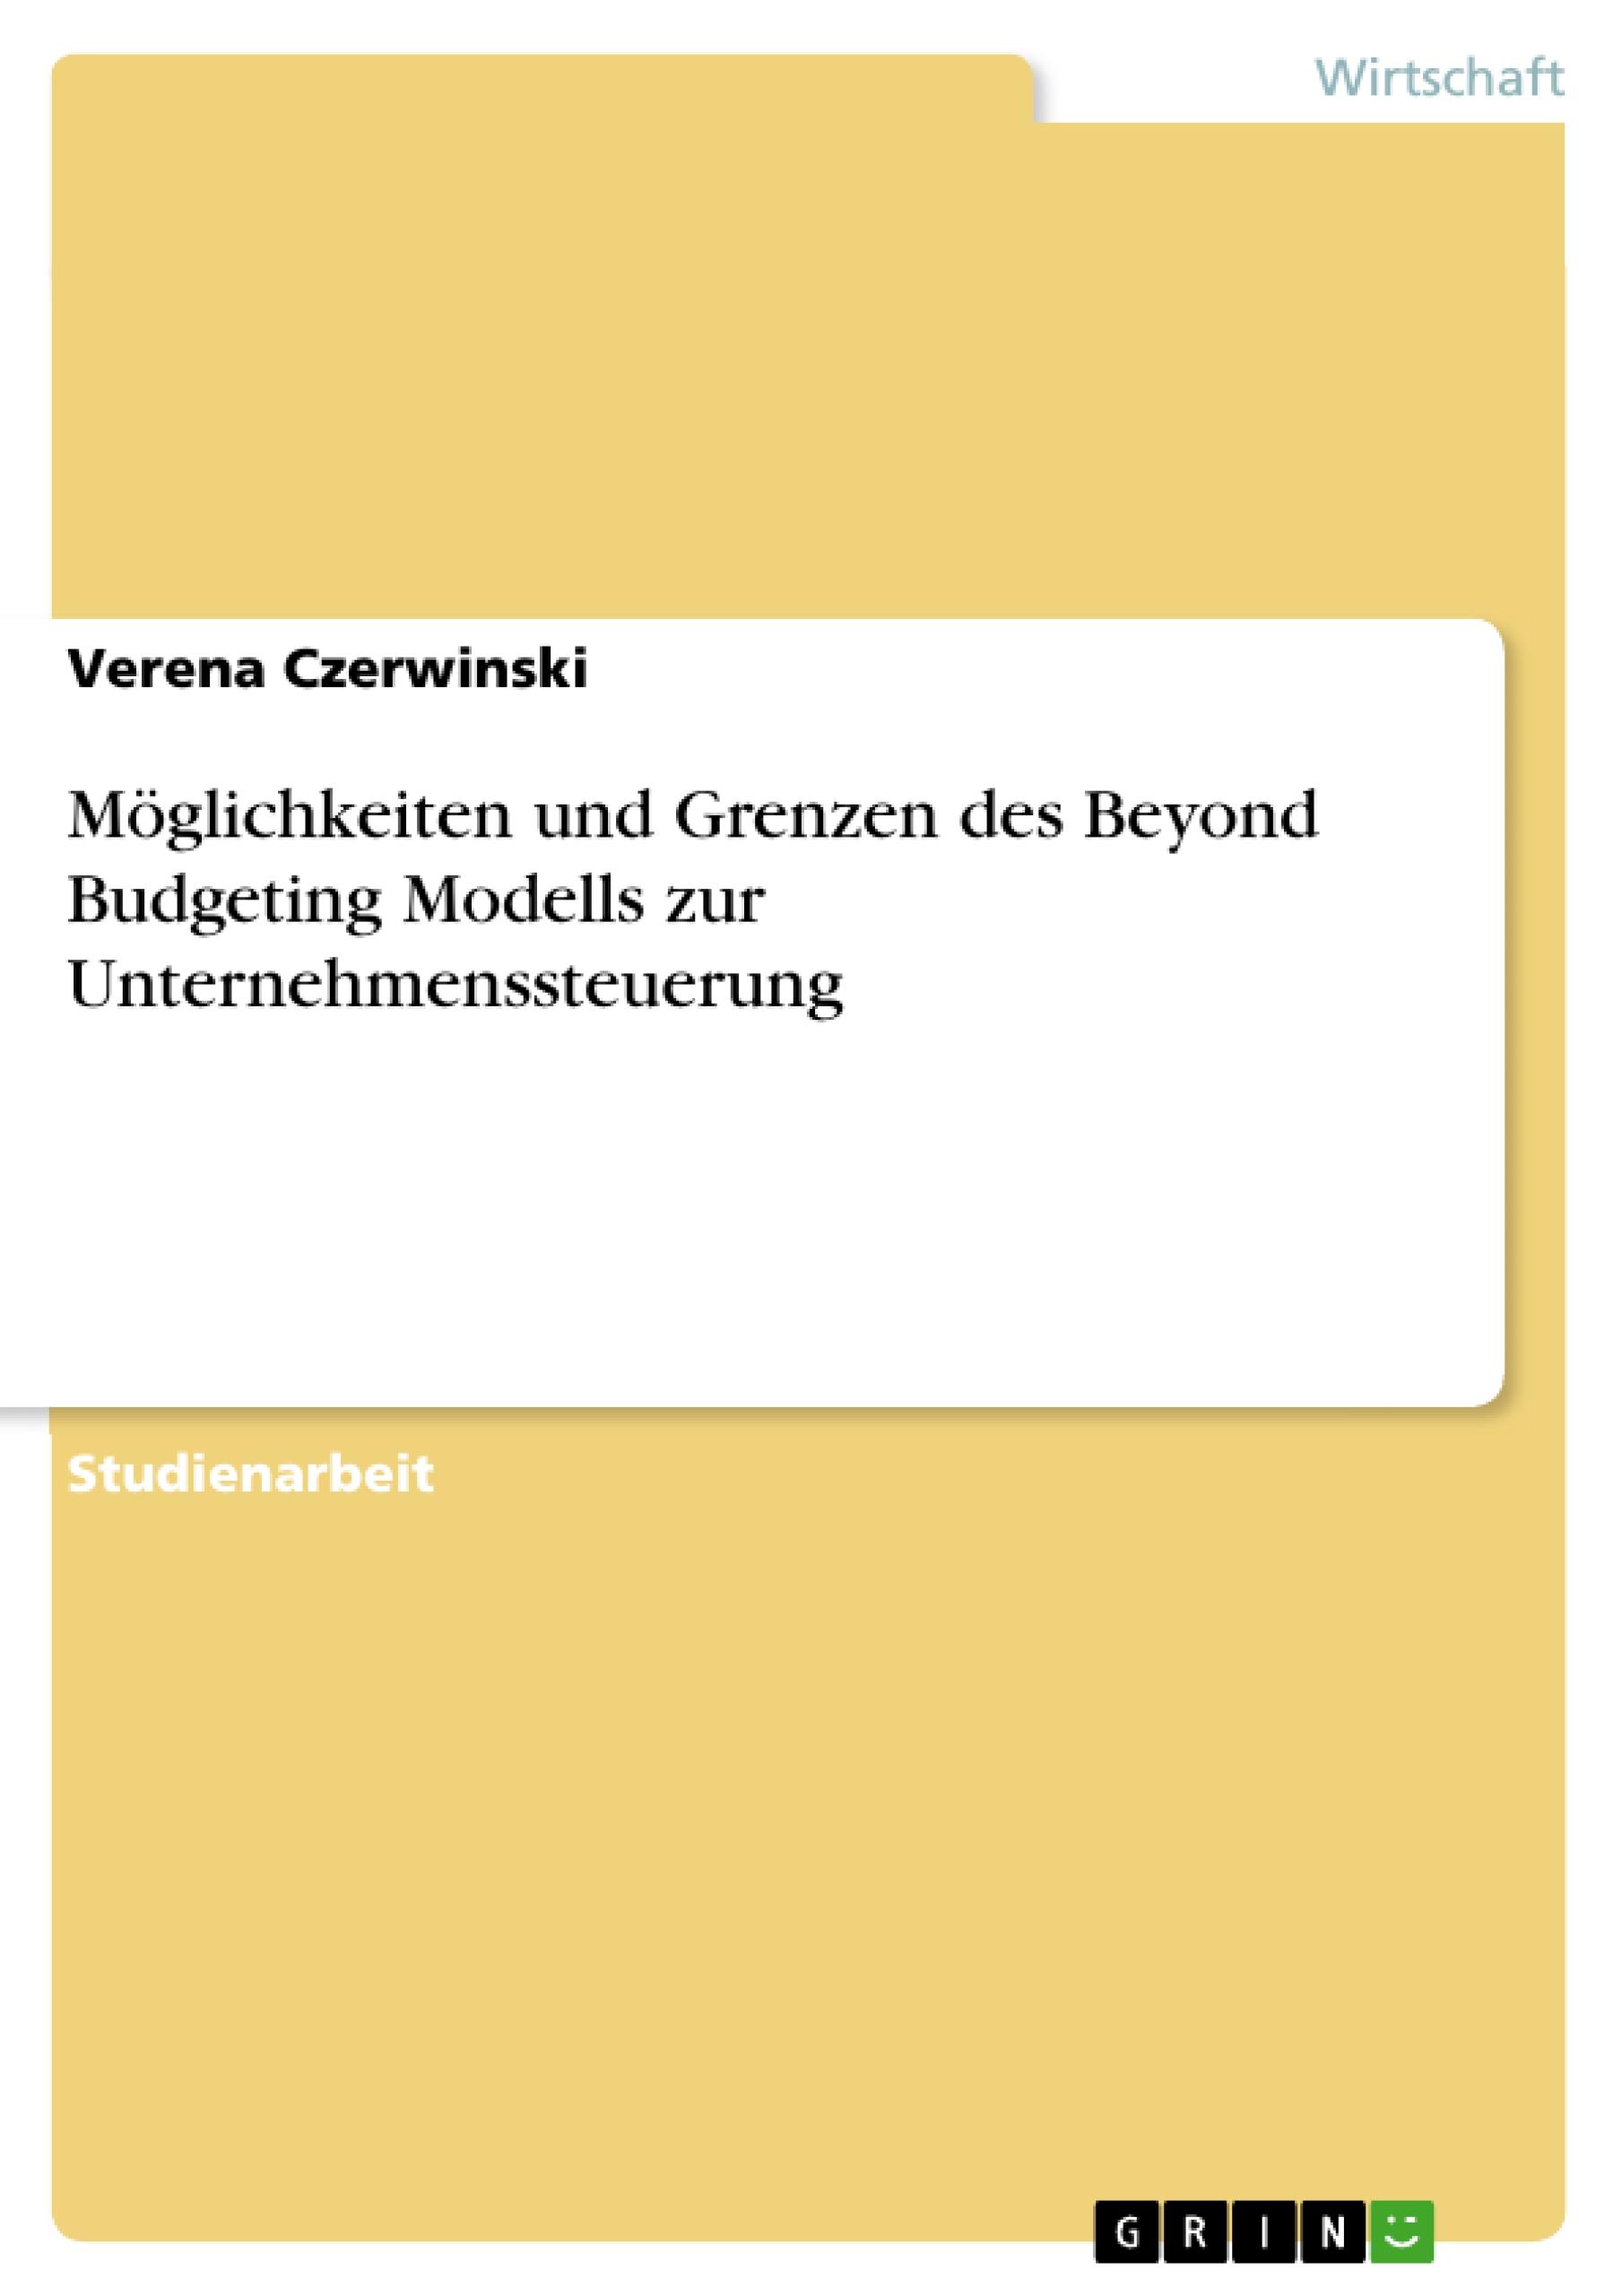 Moeglichkeiten und Grenzen des Beyond Budgeting Modells zur Unternehmenssteuerung - Czerwinski, Verena